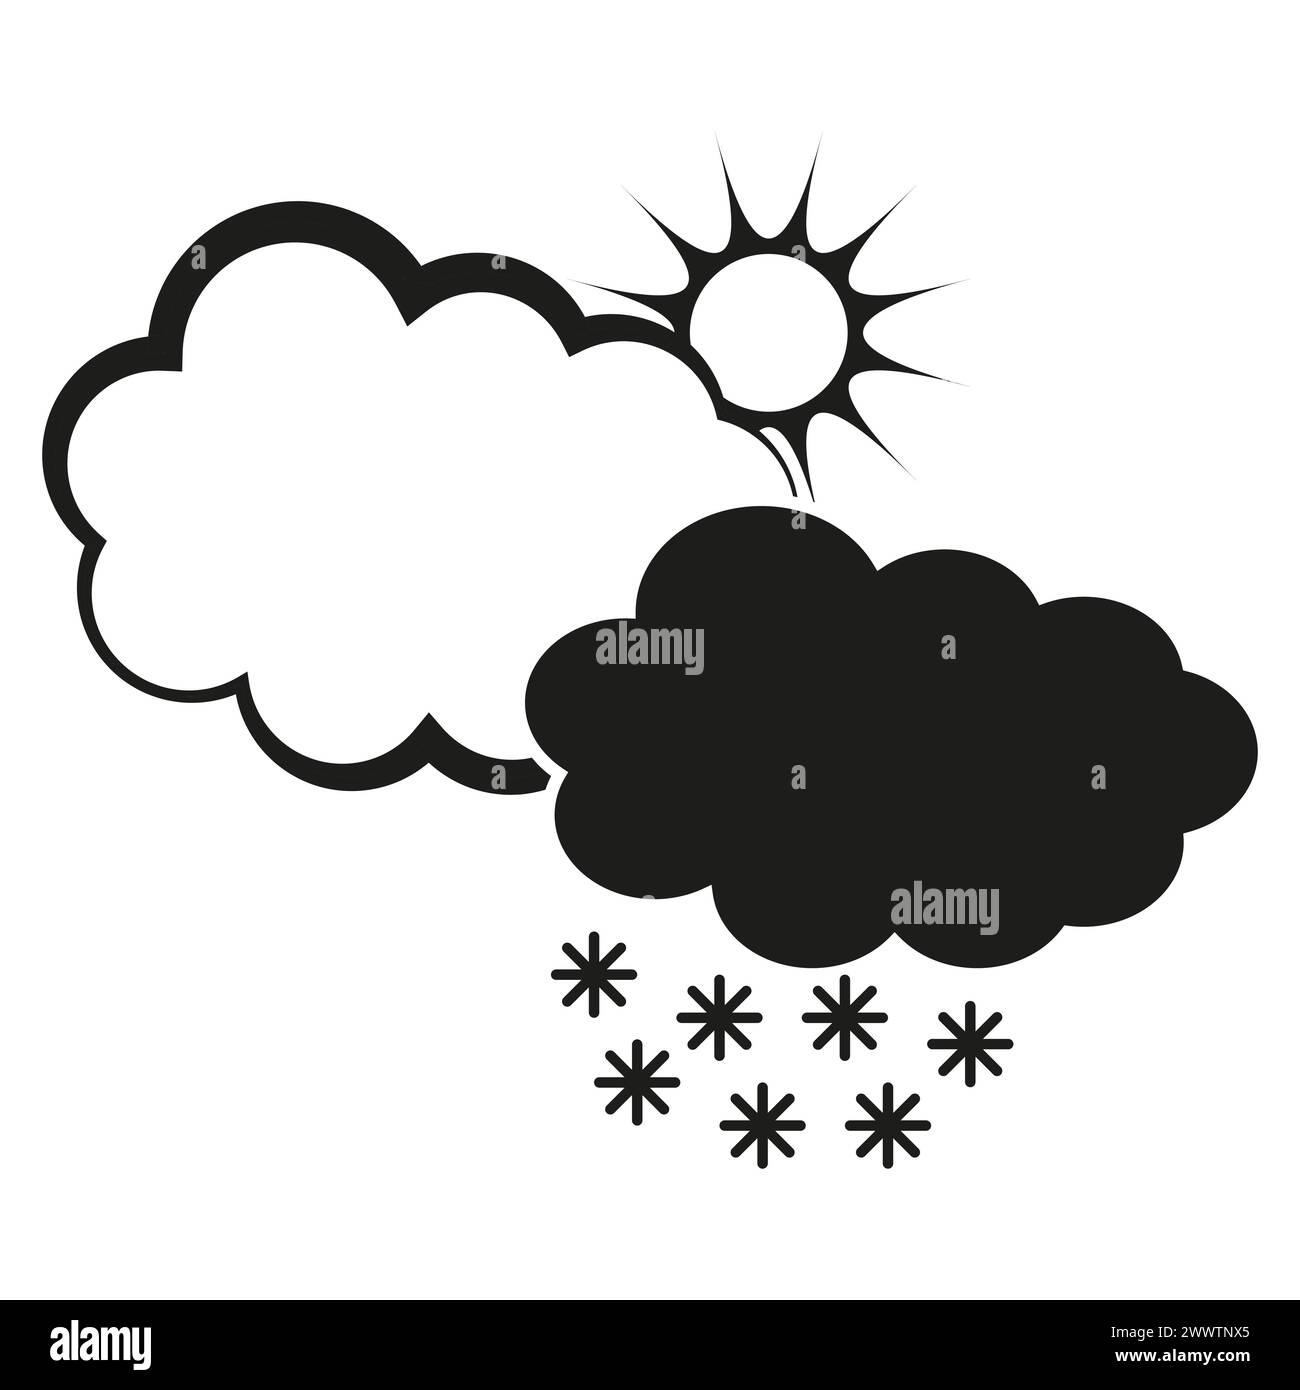 Kontrastierende Wettersymbole. Sonne hinter Wolken. Bewölkte Regenwolken. Symbol für fallende Schneeflocken. Vektorabbildung. EPS 10. Stock Vektor